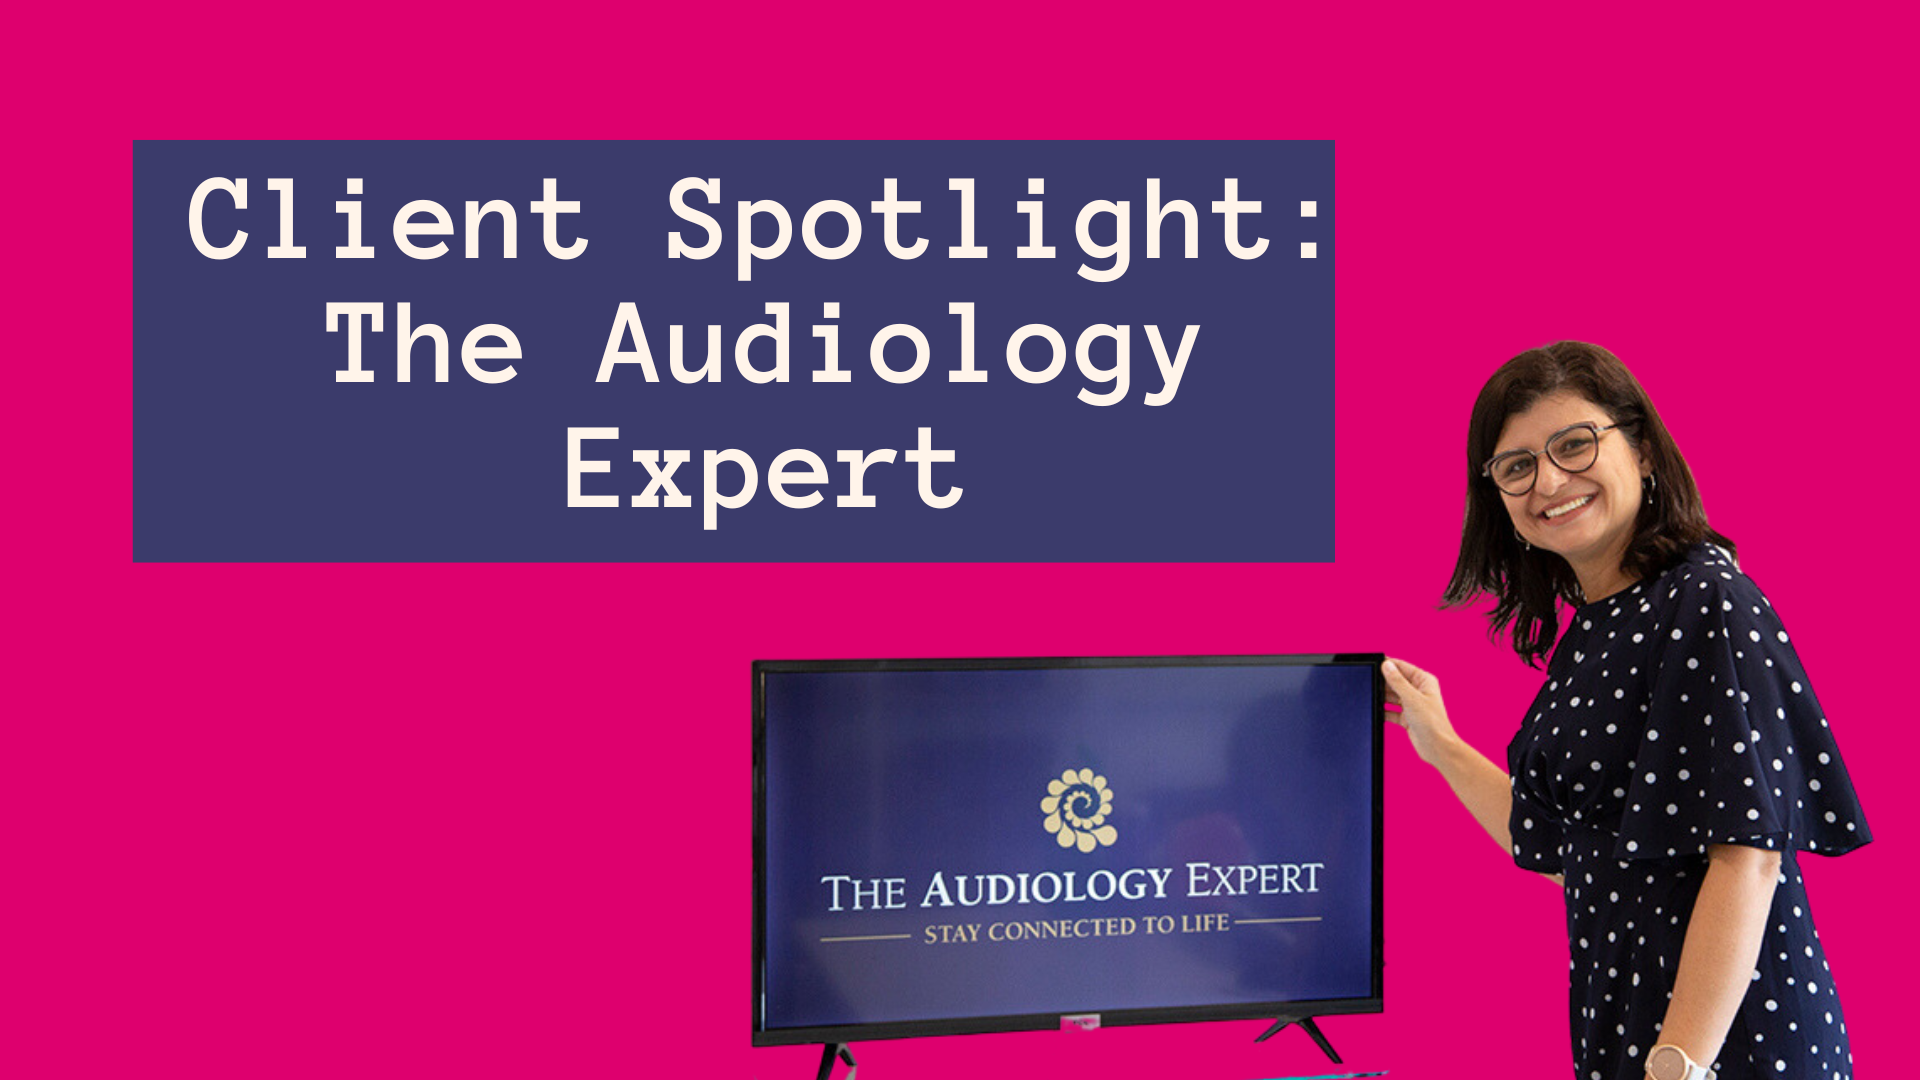 Kayla the audiology expert